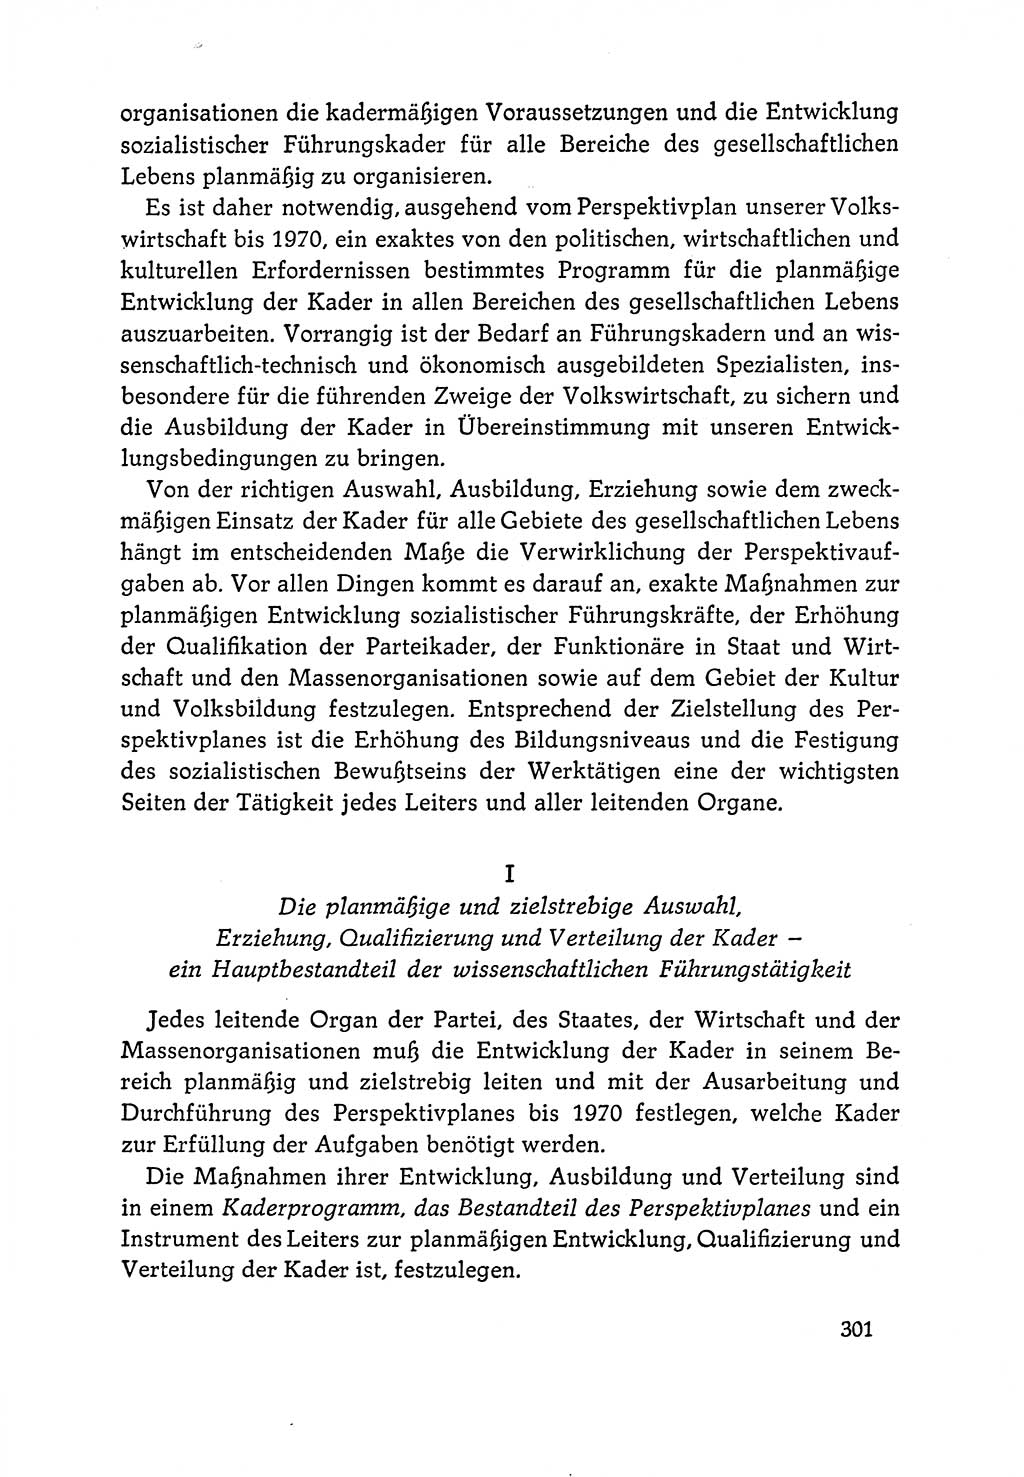 Dokumente der Sozialistischen Einheitspartei Deutschlands (SED) [Deutsche Demokratische Republik (DDR)] 1964-1965, Seite 301 (Dok. SED DDR 1964-1965, S. 301)